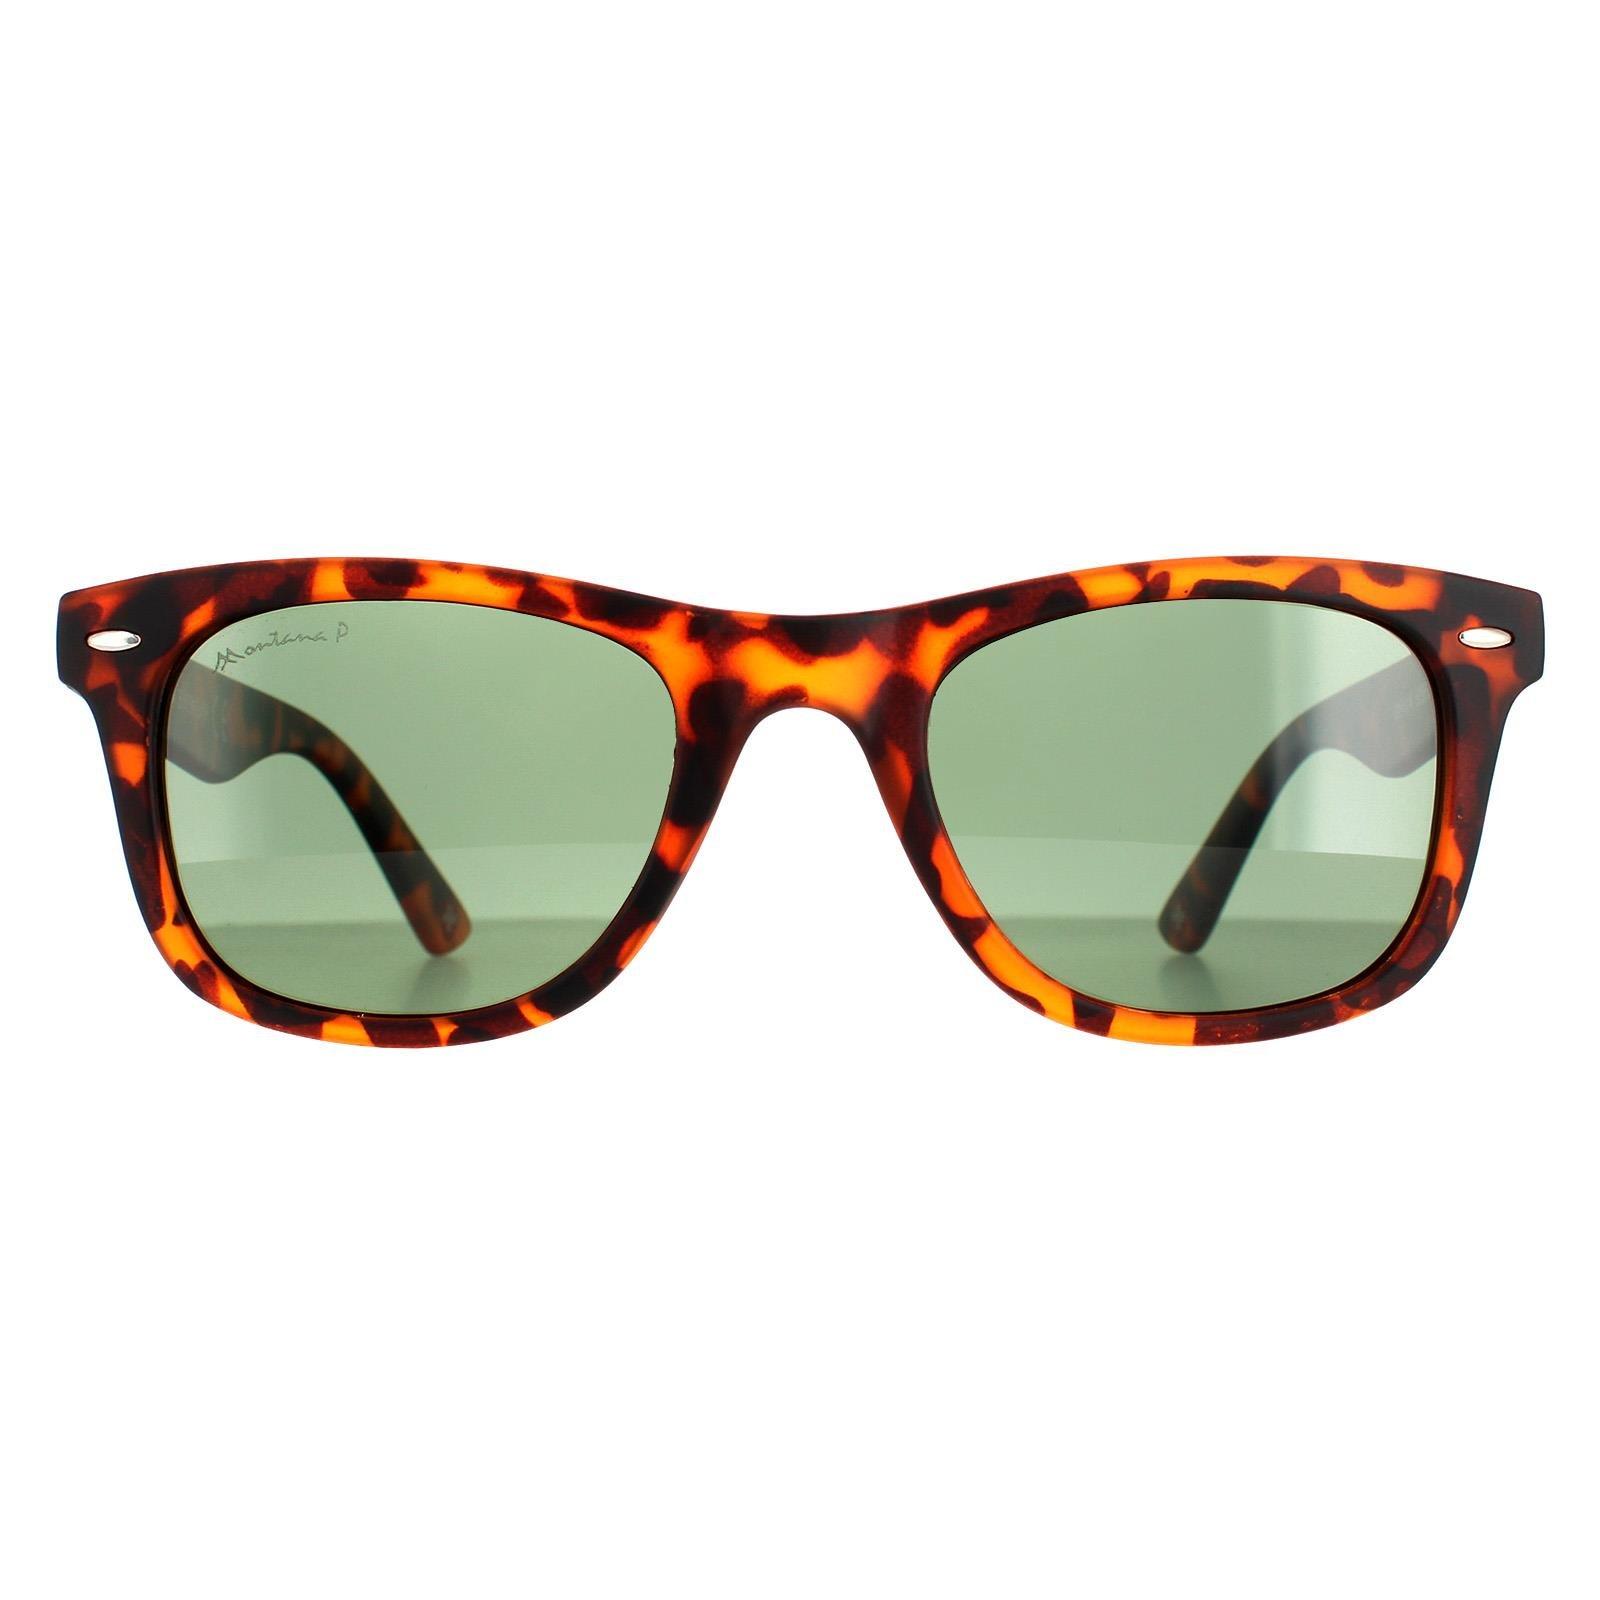 Зеленые поляризованные солнцезащитные очки Square Turtle Rubbertouch MP41 montana, коричневый